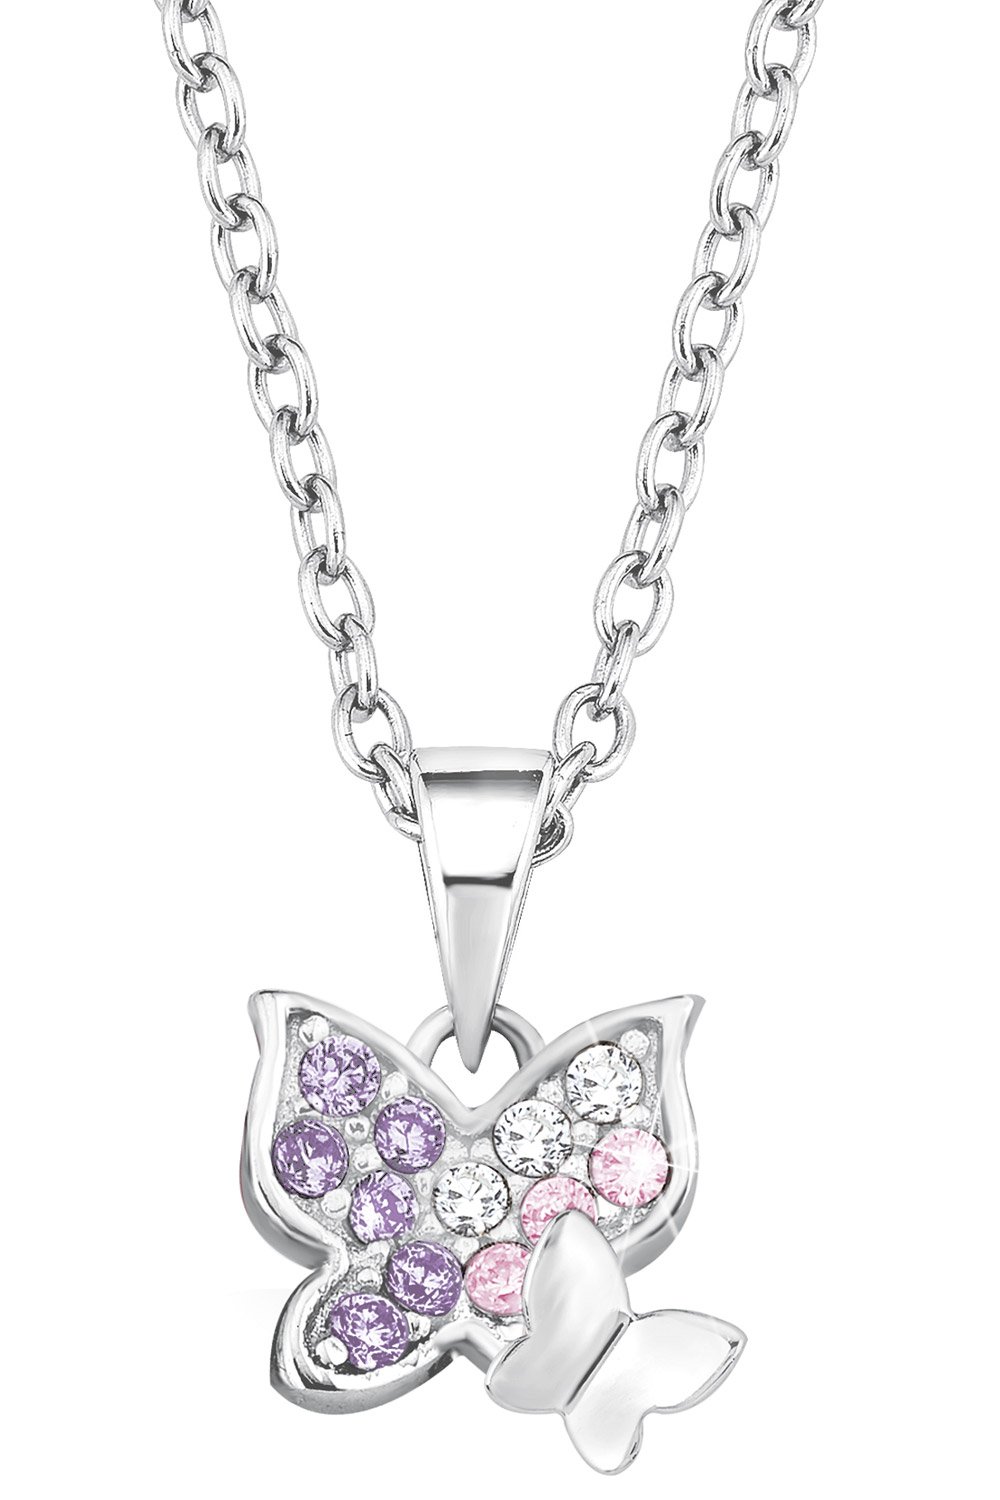 Prinzessin Lillifee Silber-Halskette für Kinder Schmetterlinge 2021103 •  uhrcenter